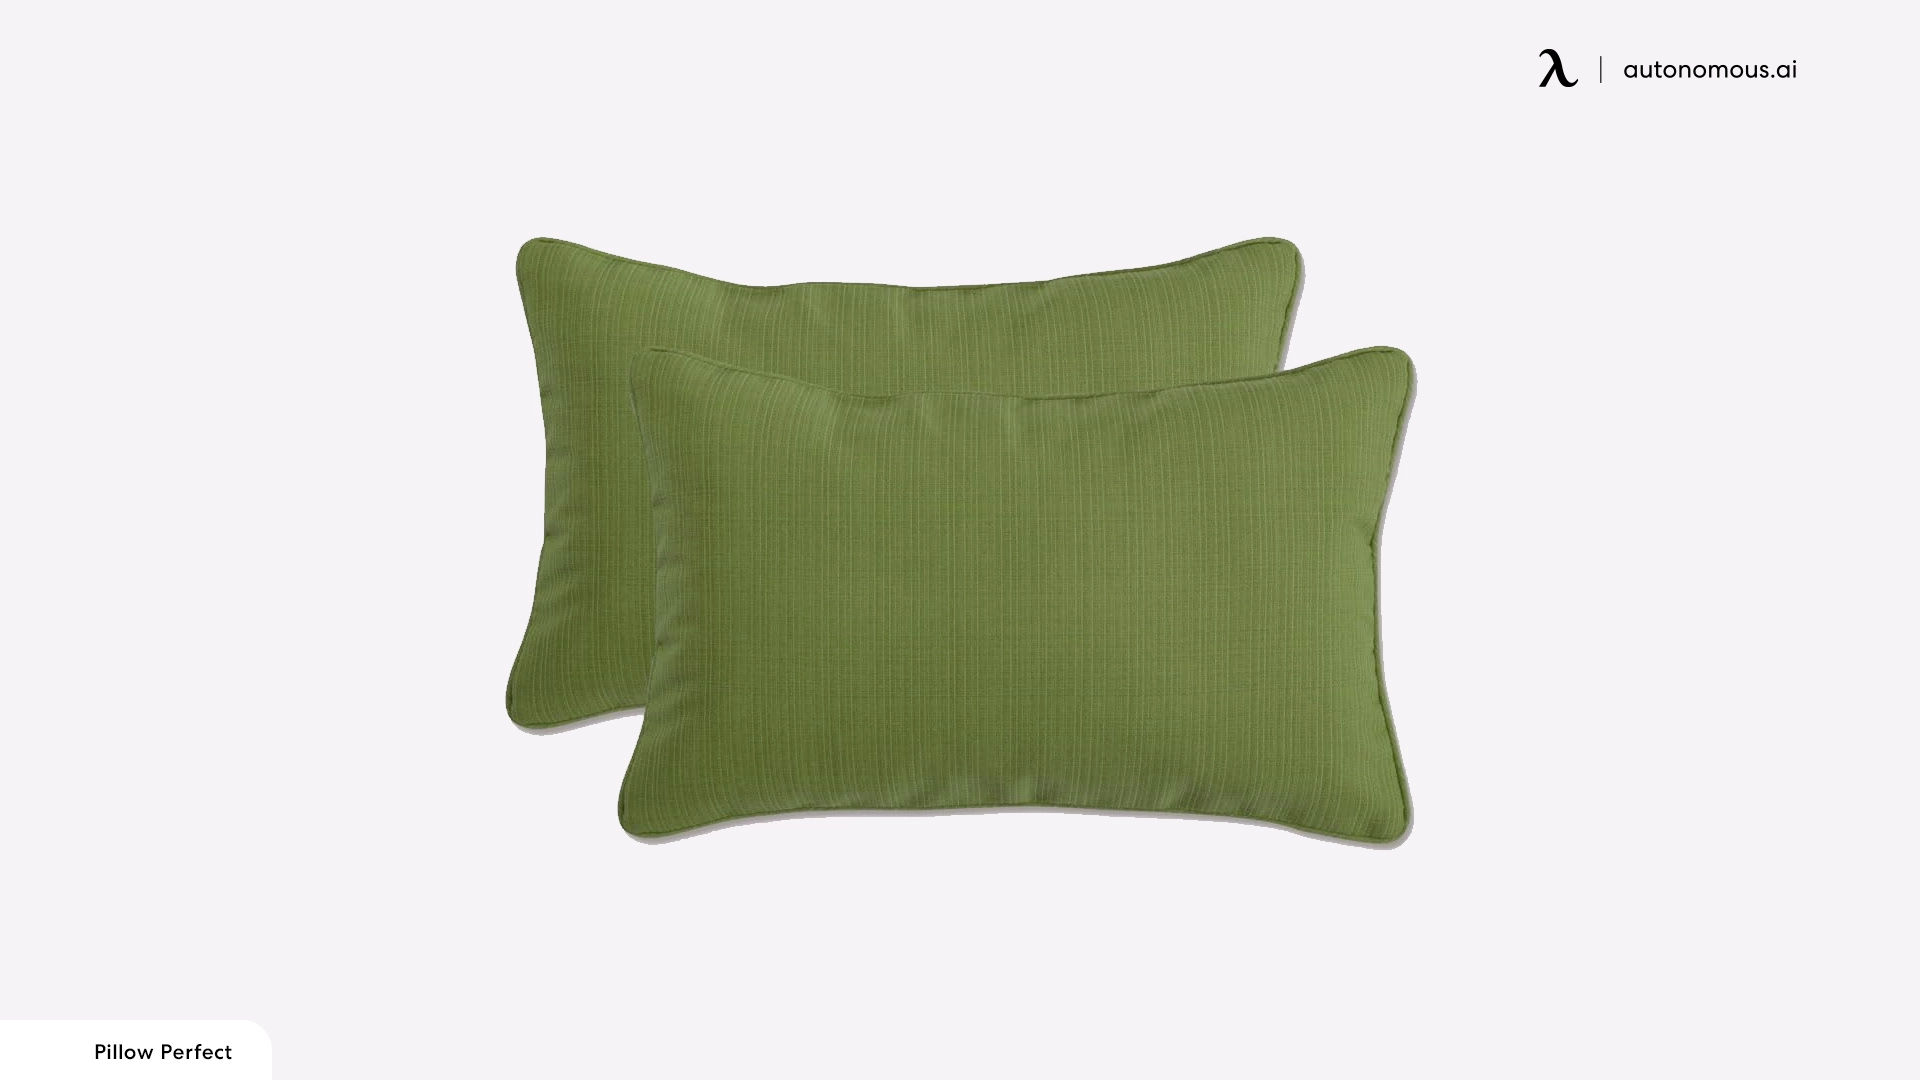 Pillow Perfect Lumbar Support